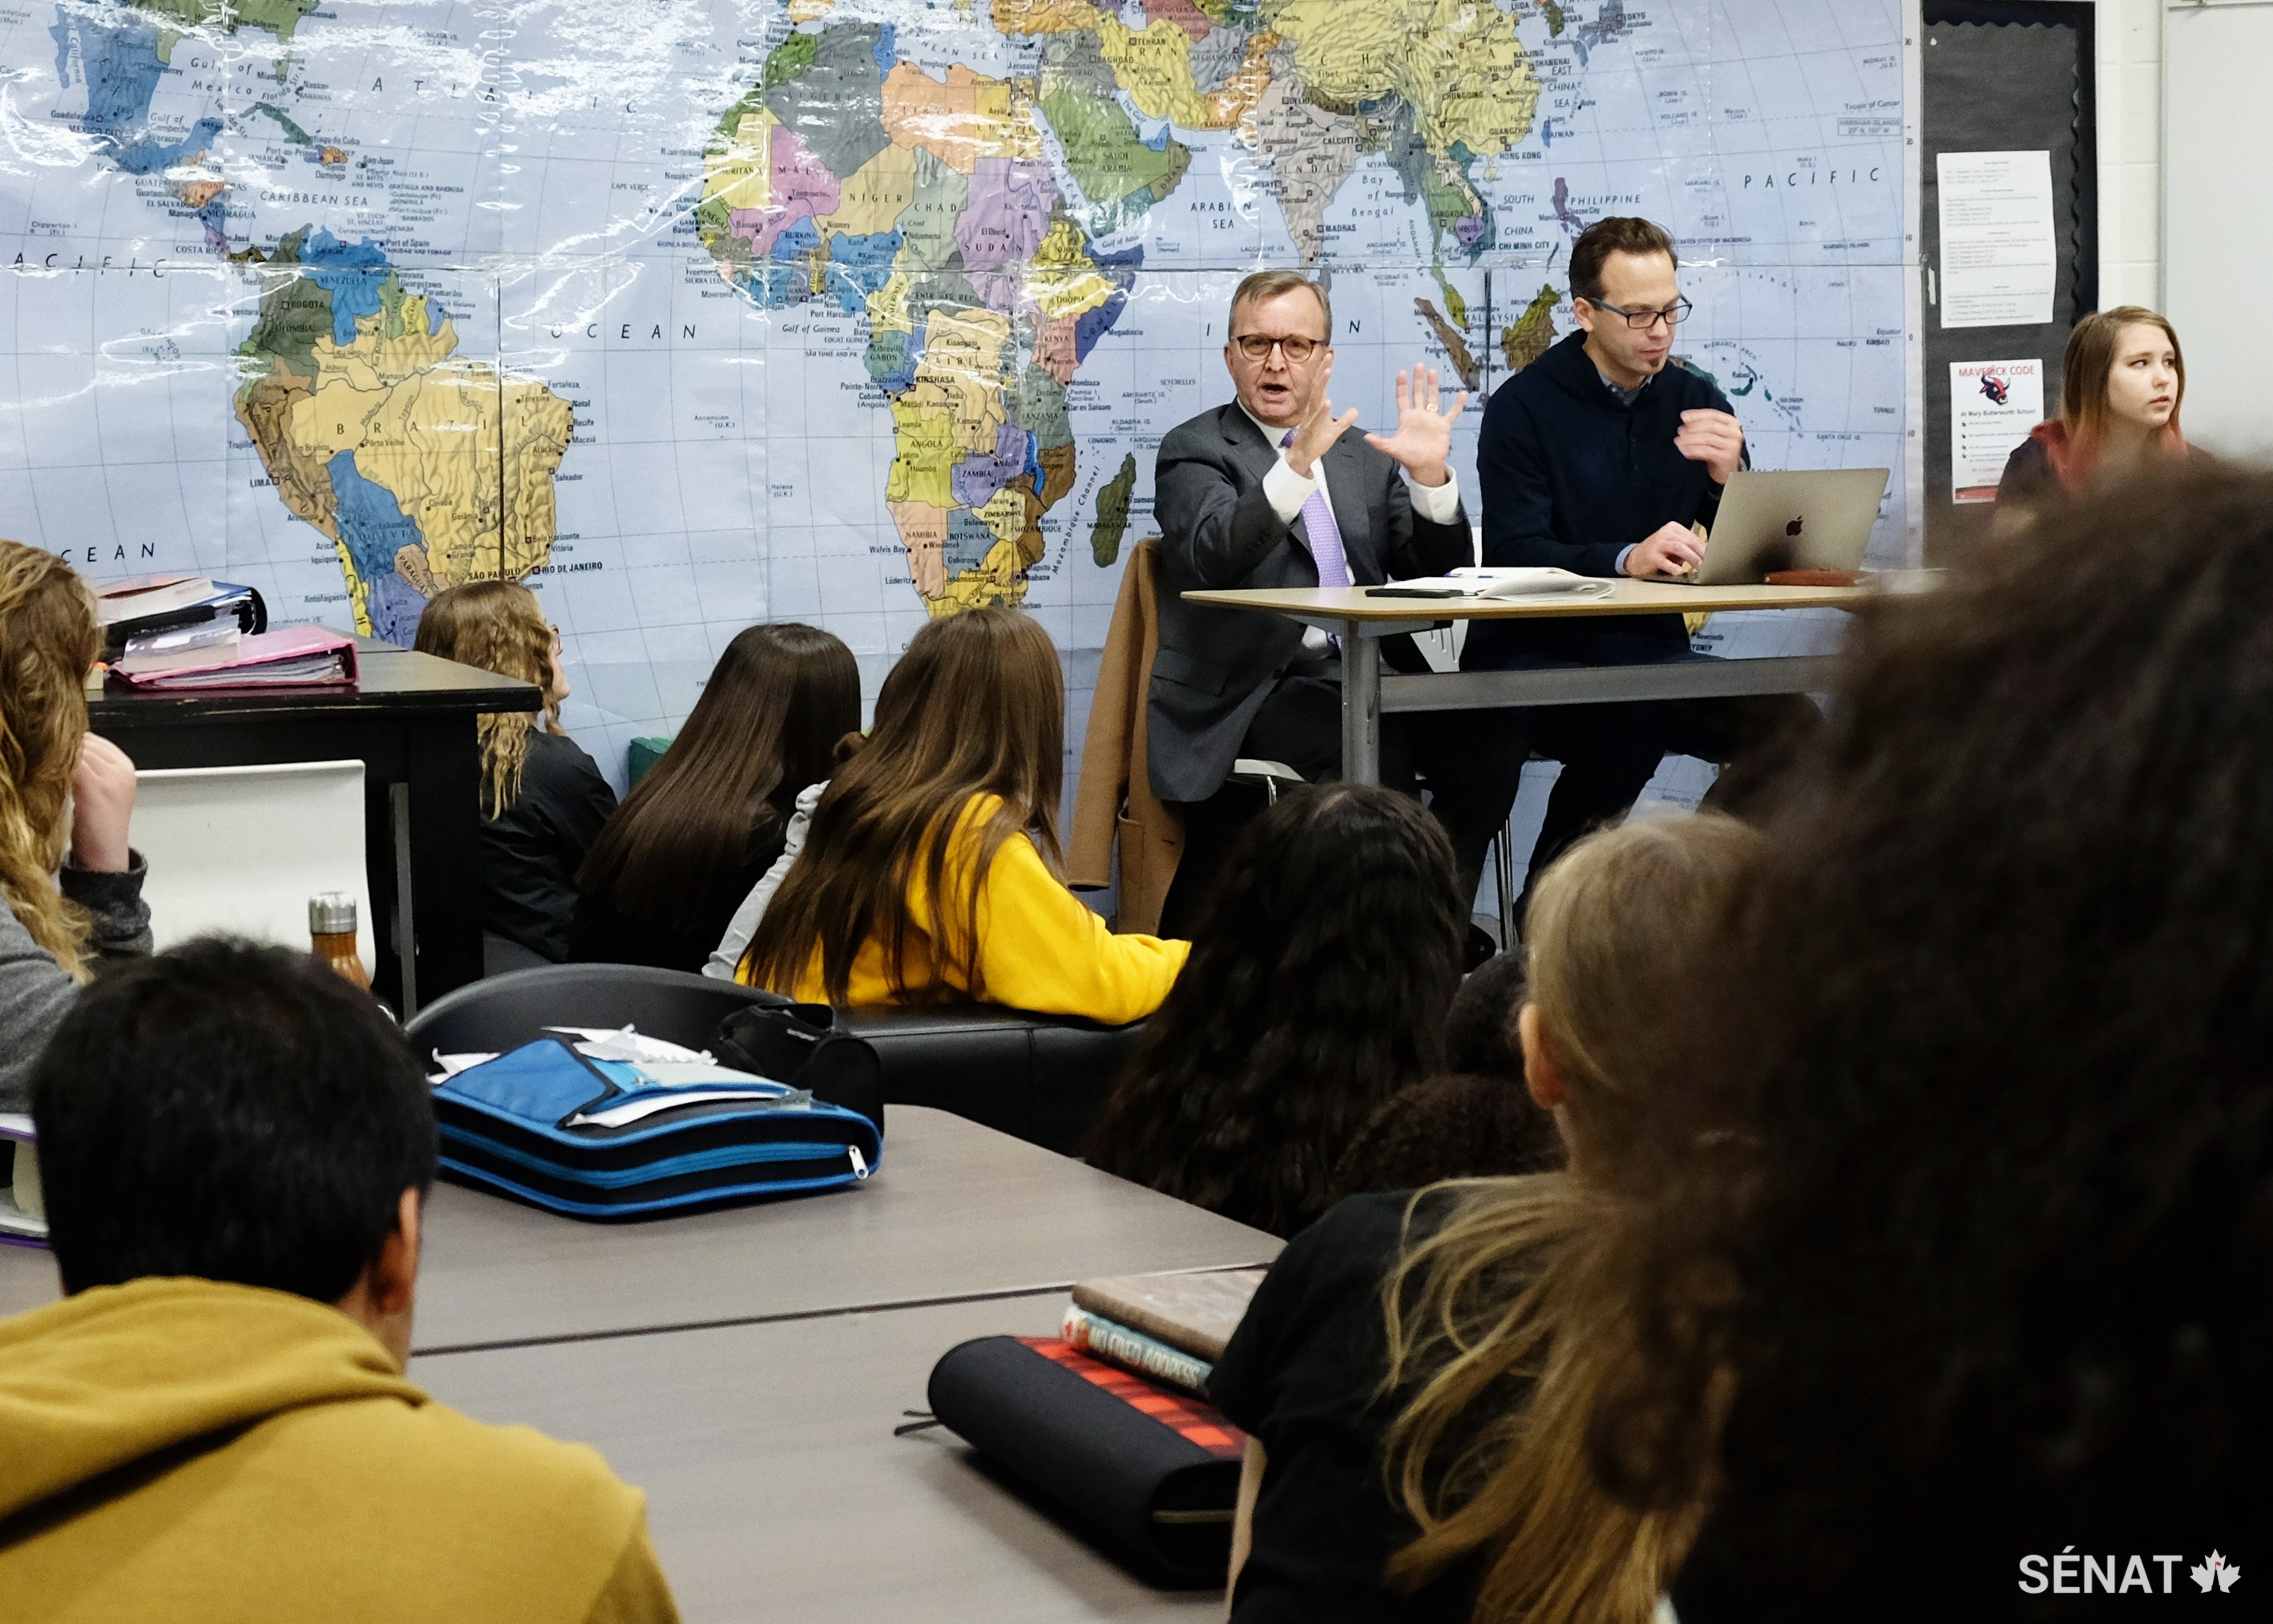 Le sénateur Grant Mitchell répond aux questions des élèves de l’école Mary Butterworth d’Edmonton, pendant que le directeur général du Centre pour l’éducation mondiale, Terry Godwaldt, s’occupe de la vidéoconférence.